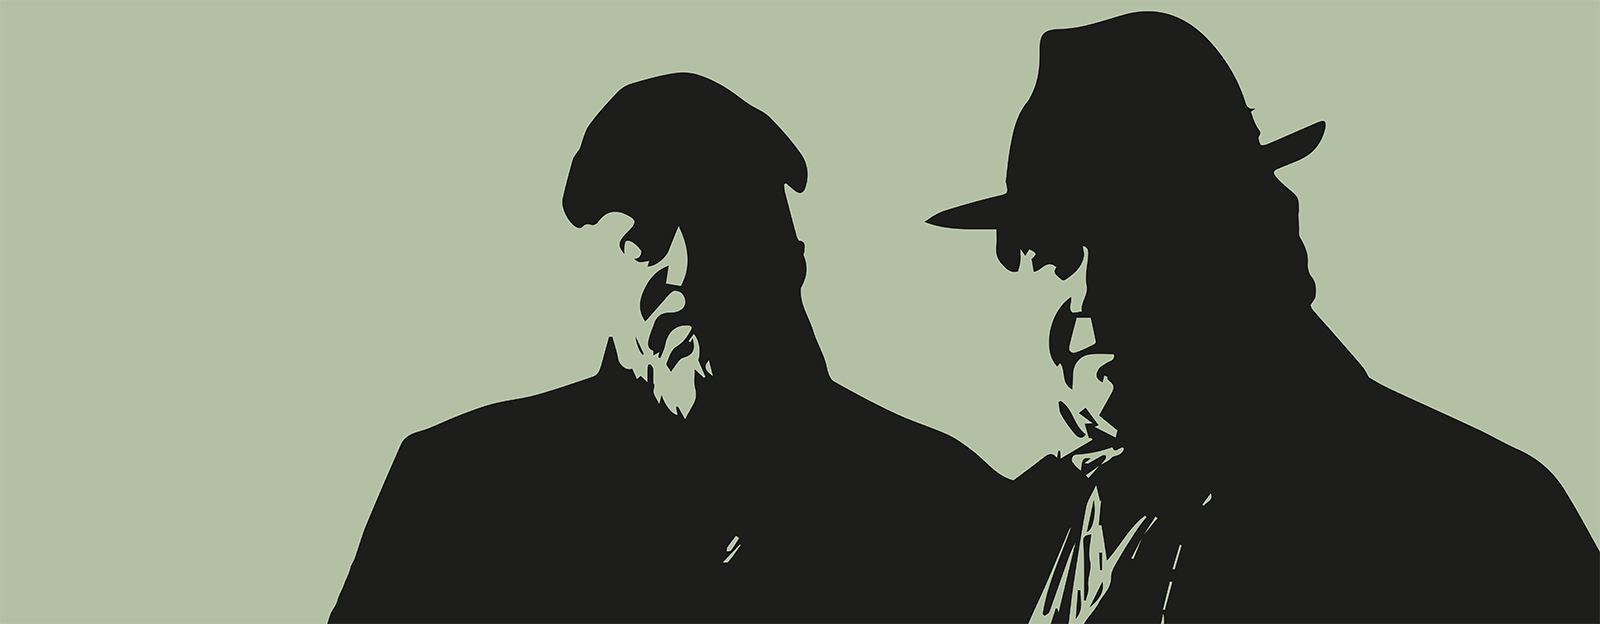 Grafisk bild siluetter av två män mot ljusgrön bakgrund. Illustration till gruppen Wadman, Dagens Lunchteater